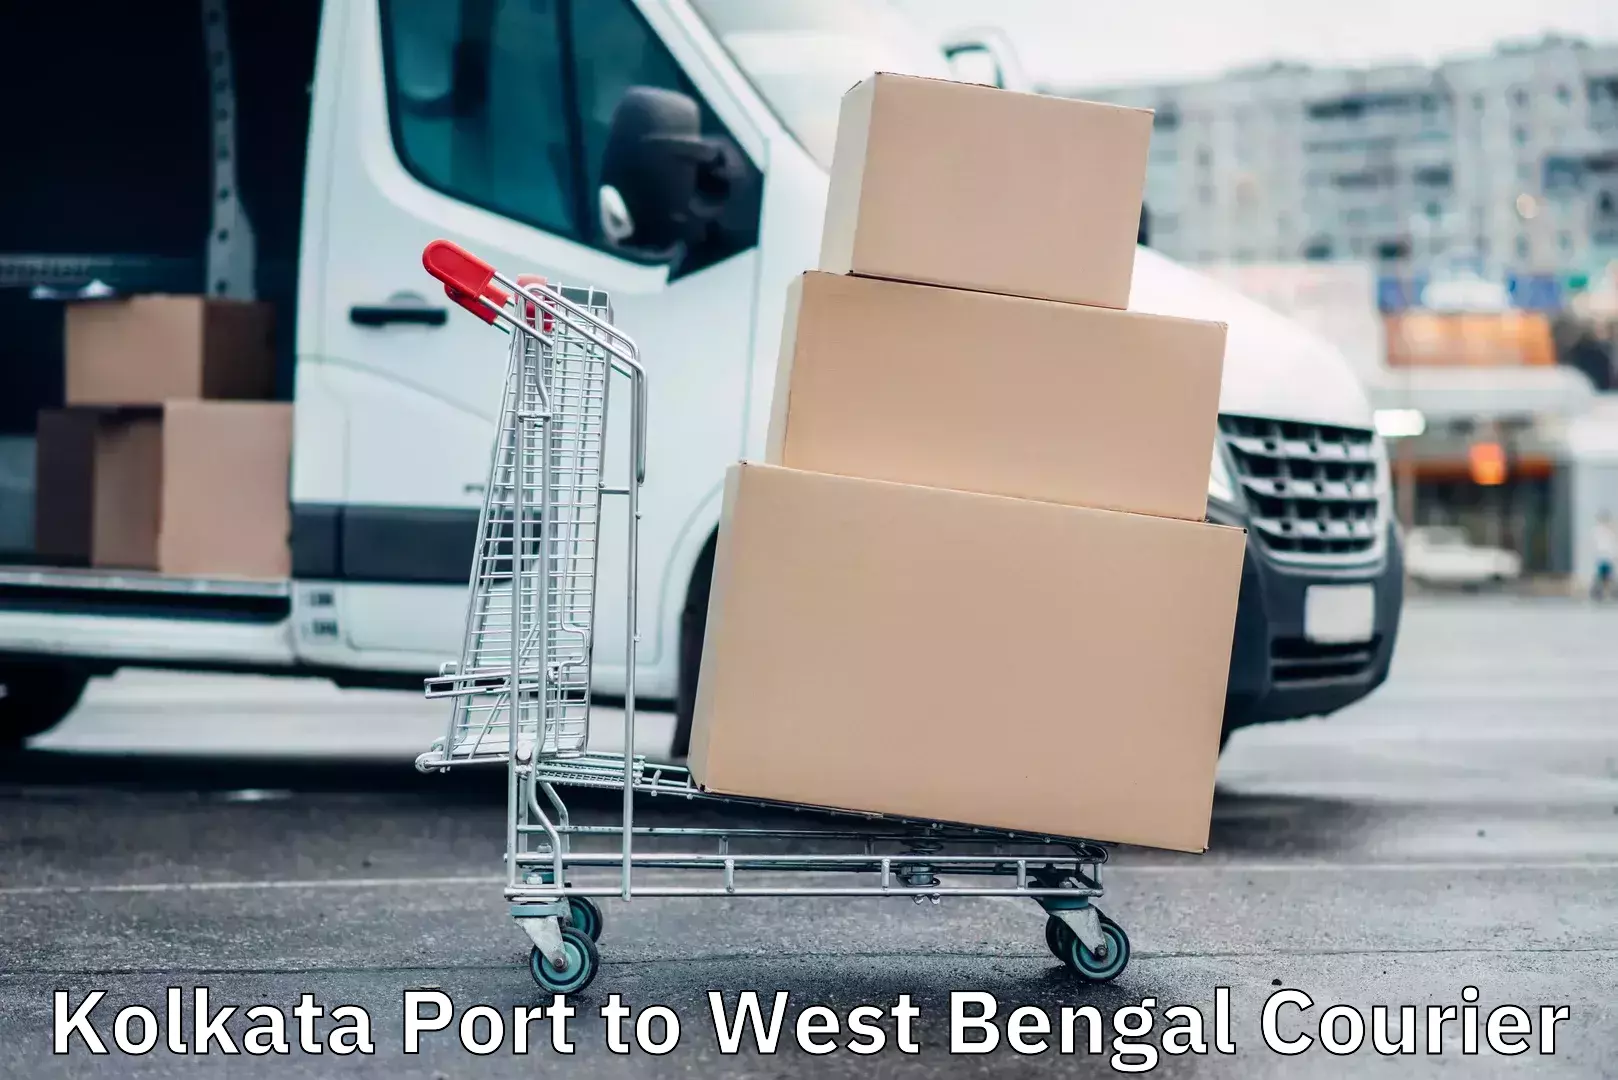 Quality courier services Kolkata Port to Lataguri